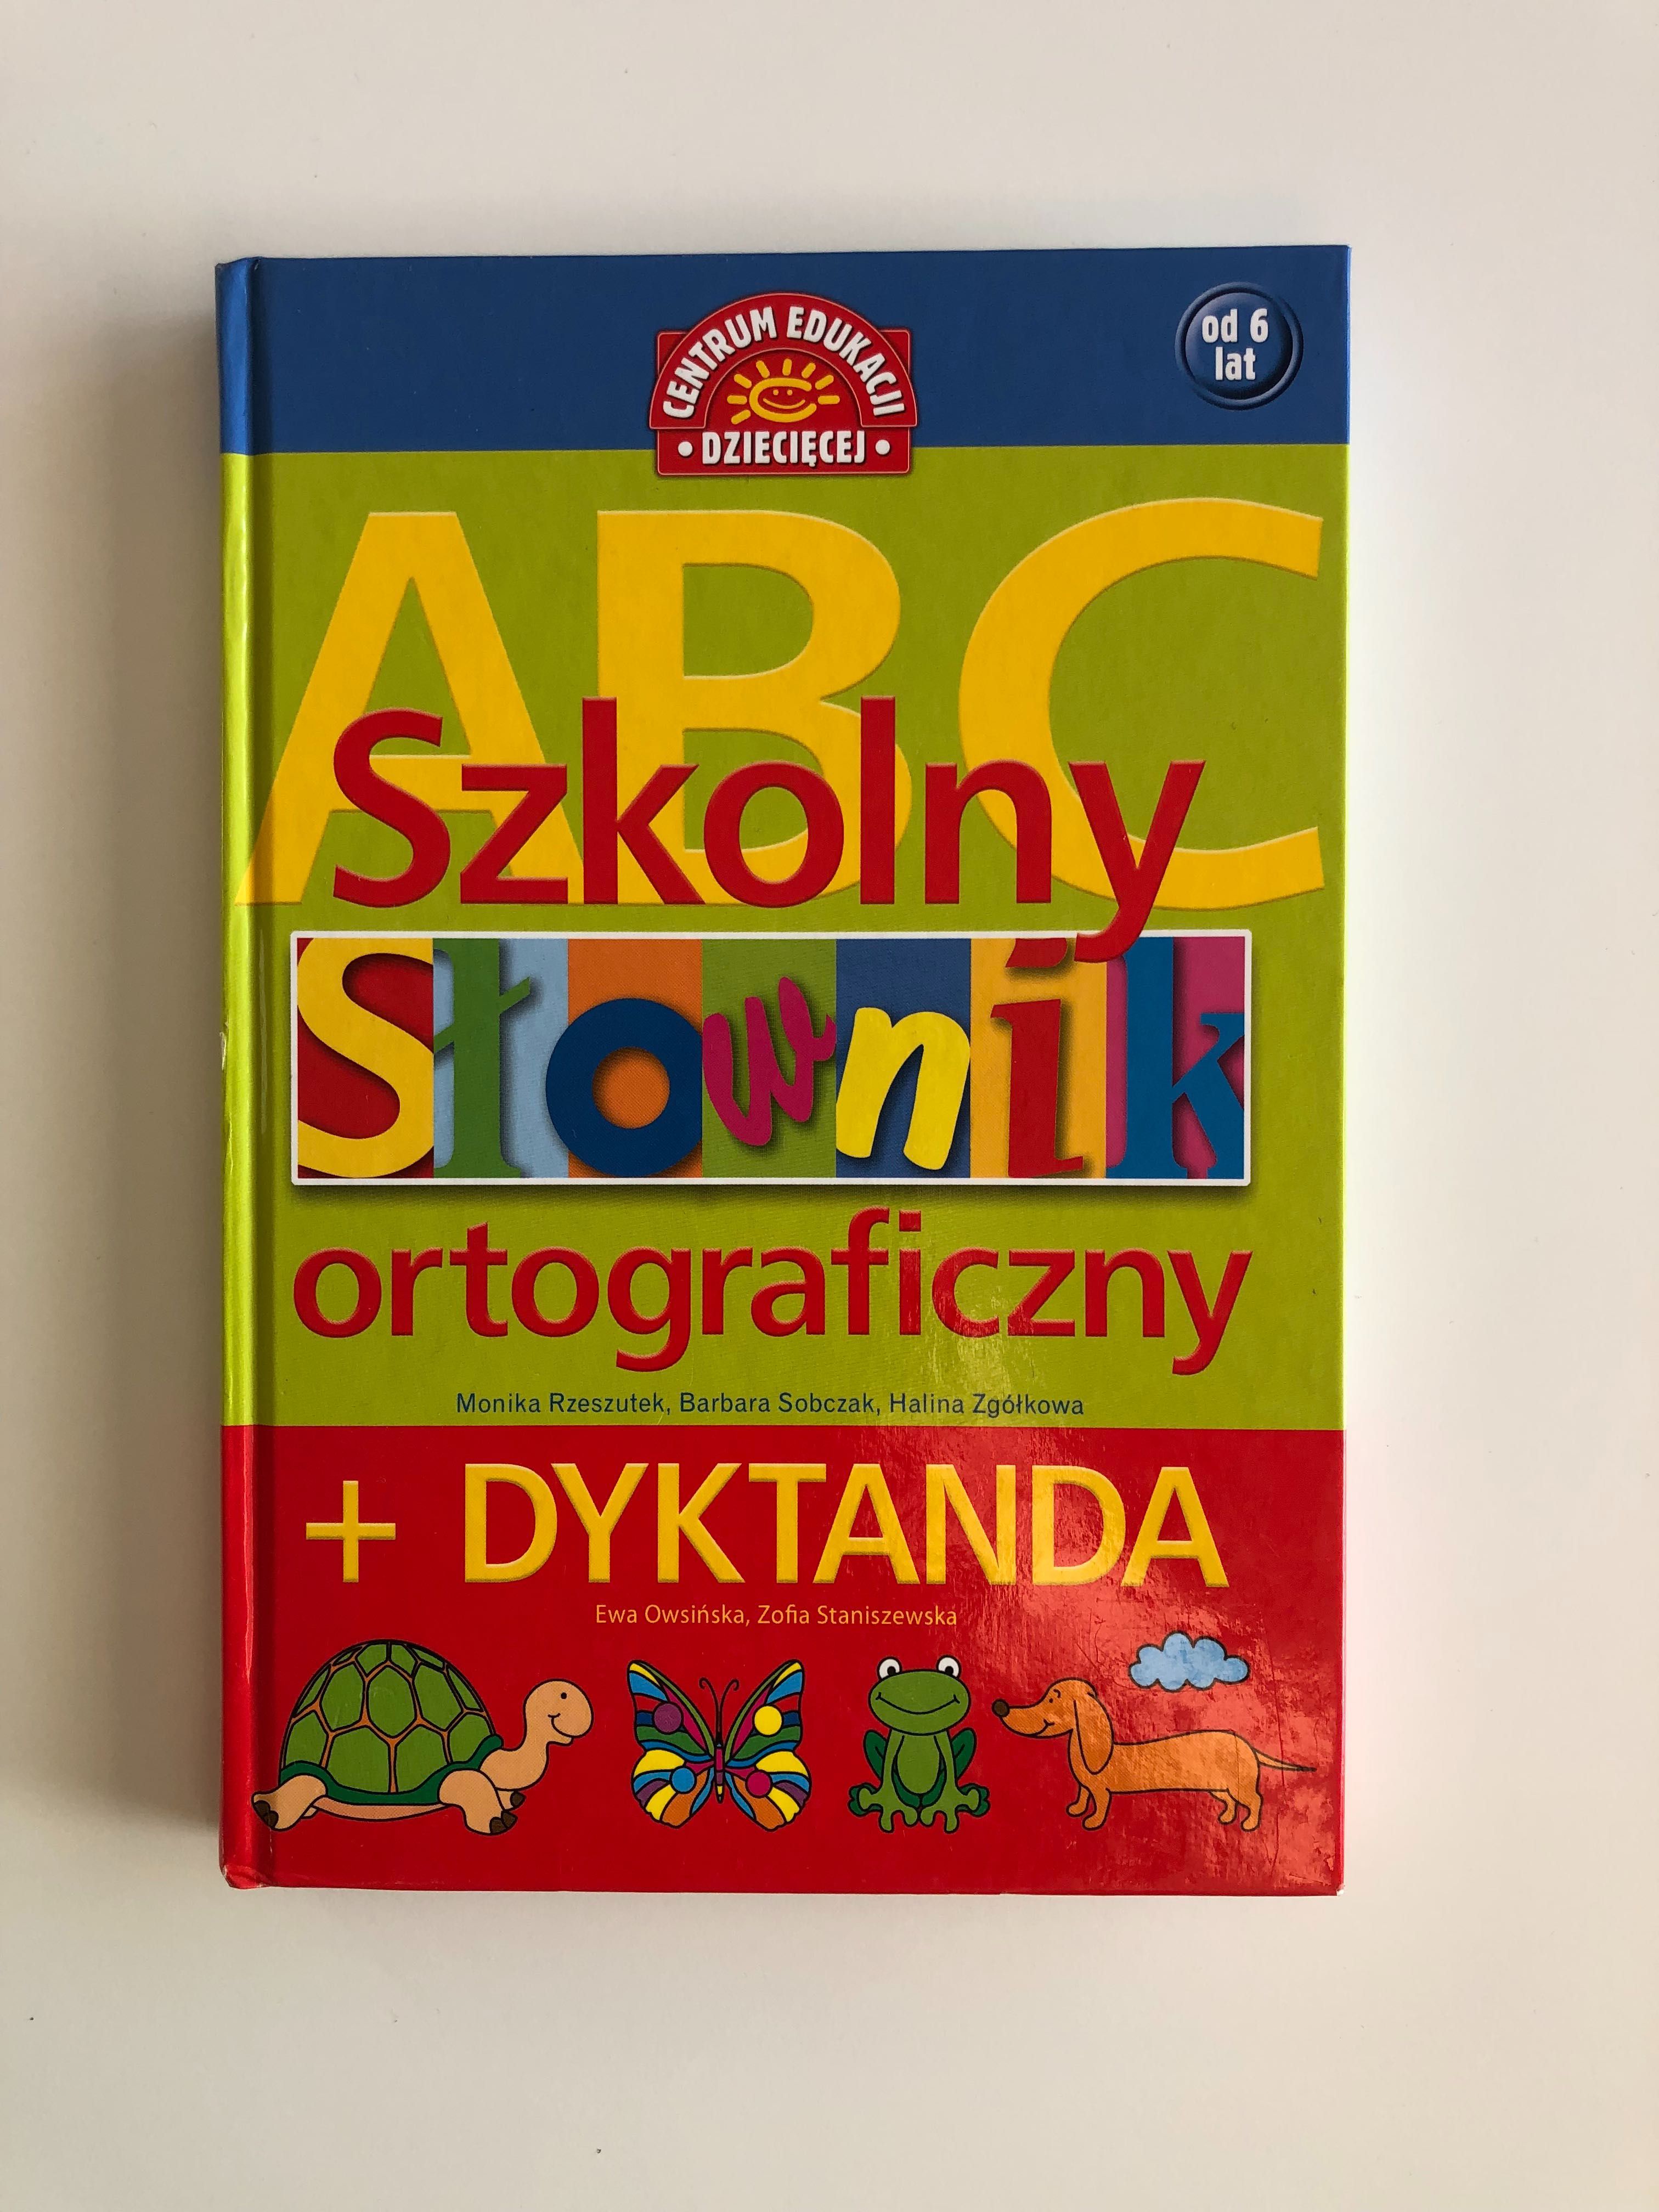 Szkolny słownik ortograficzny + Dyktanda od 6 lat